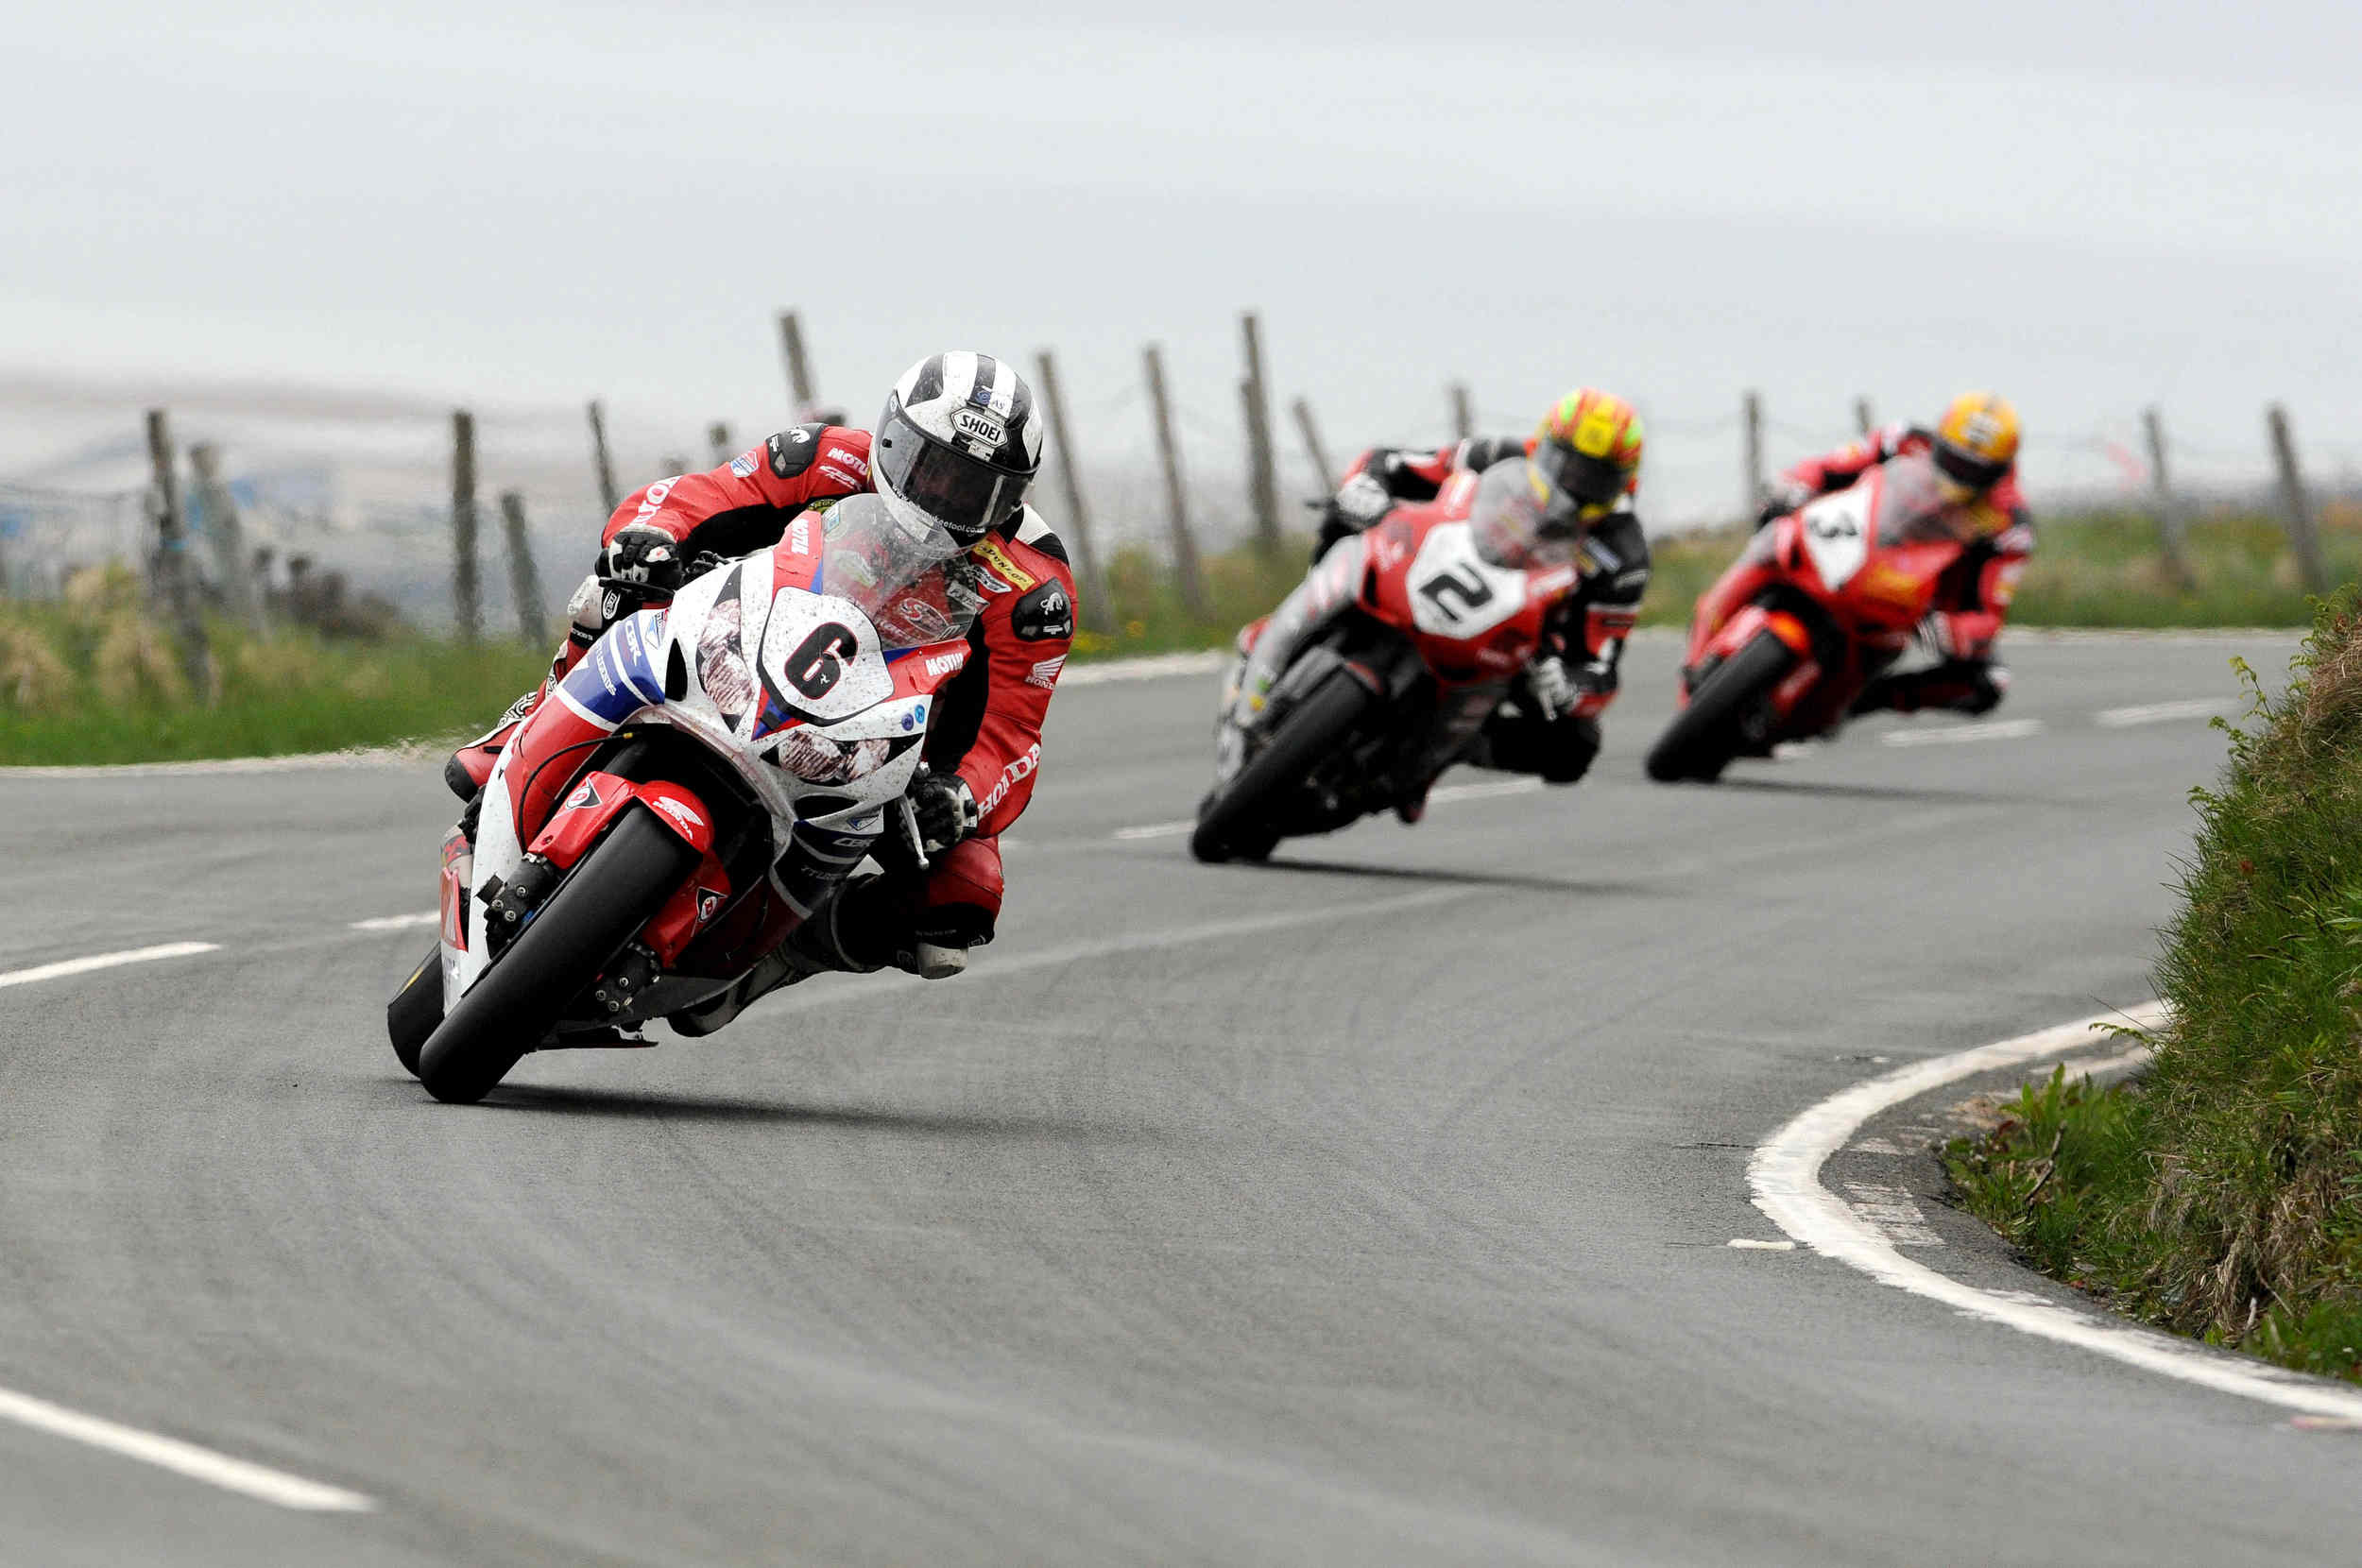  Superbike TT 2013 - Michael Dunlop, Cameron Donald and John McGuinness 